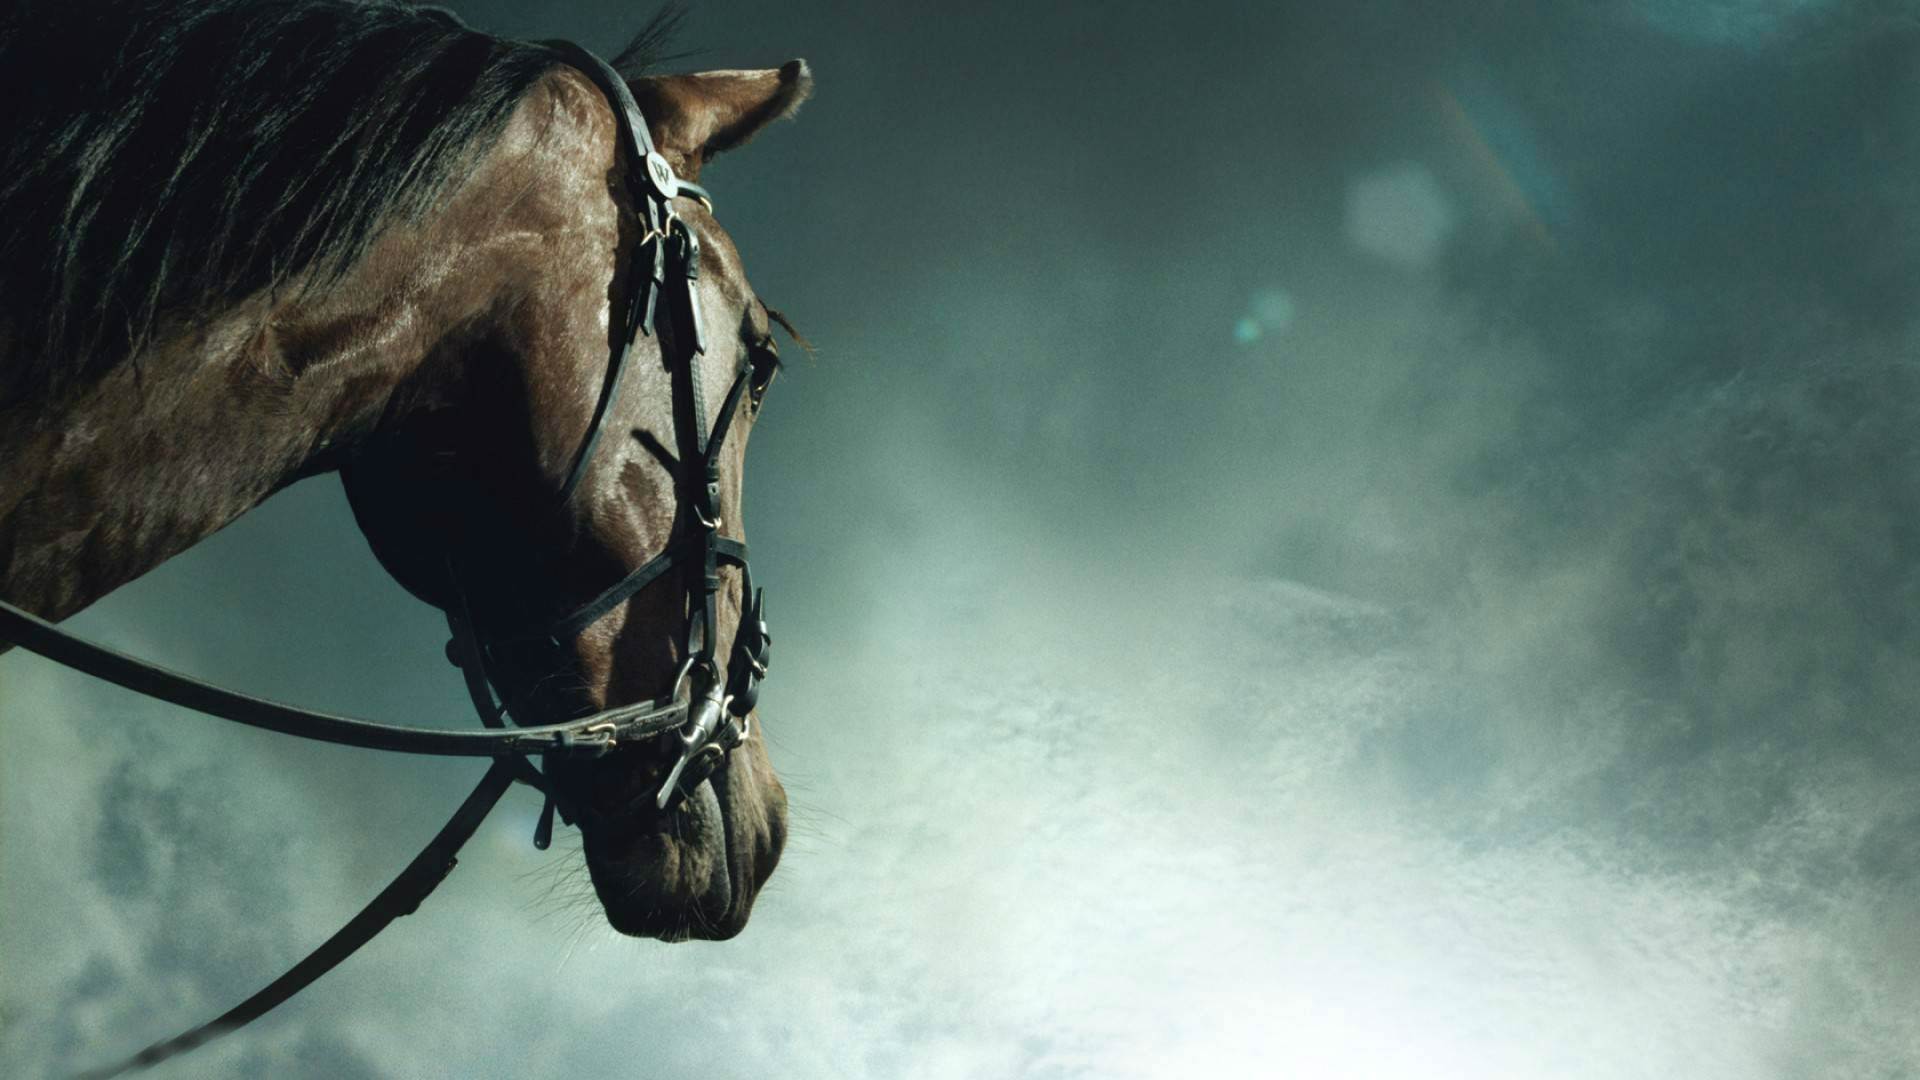 Horses HD Wallpaper Horse Desktop 1080p